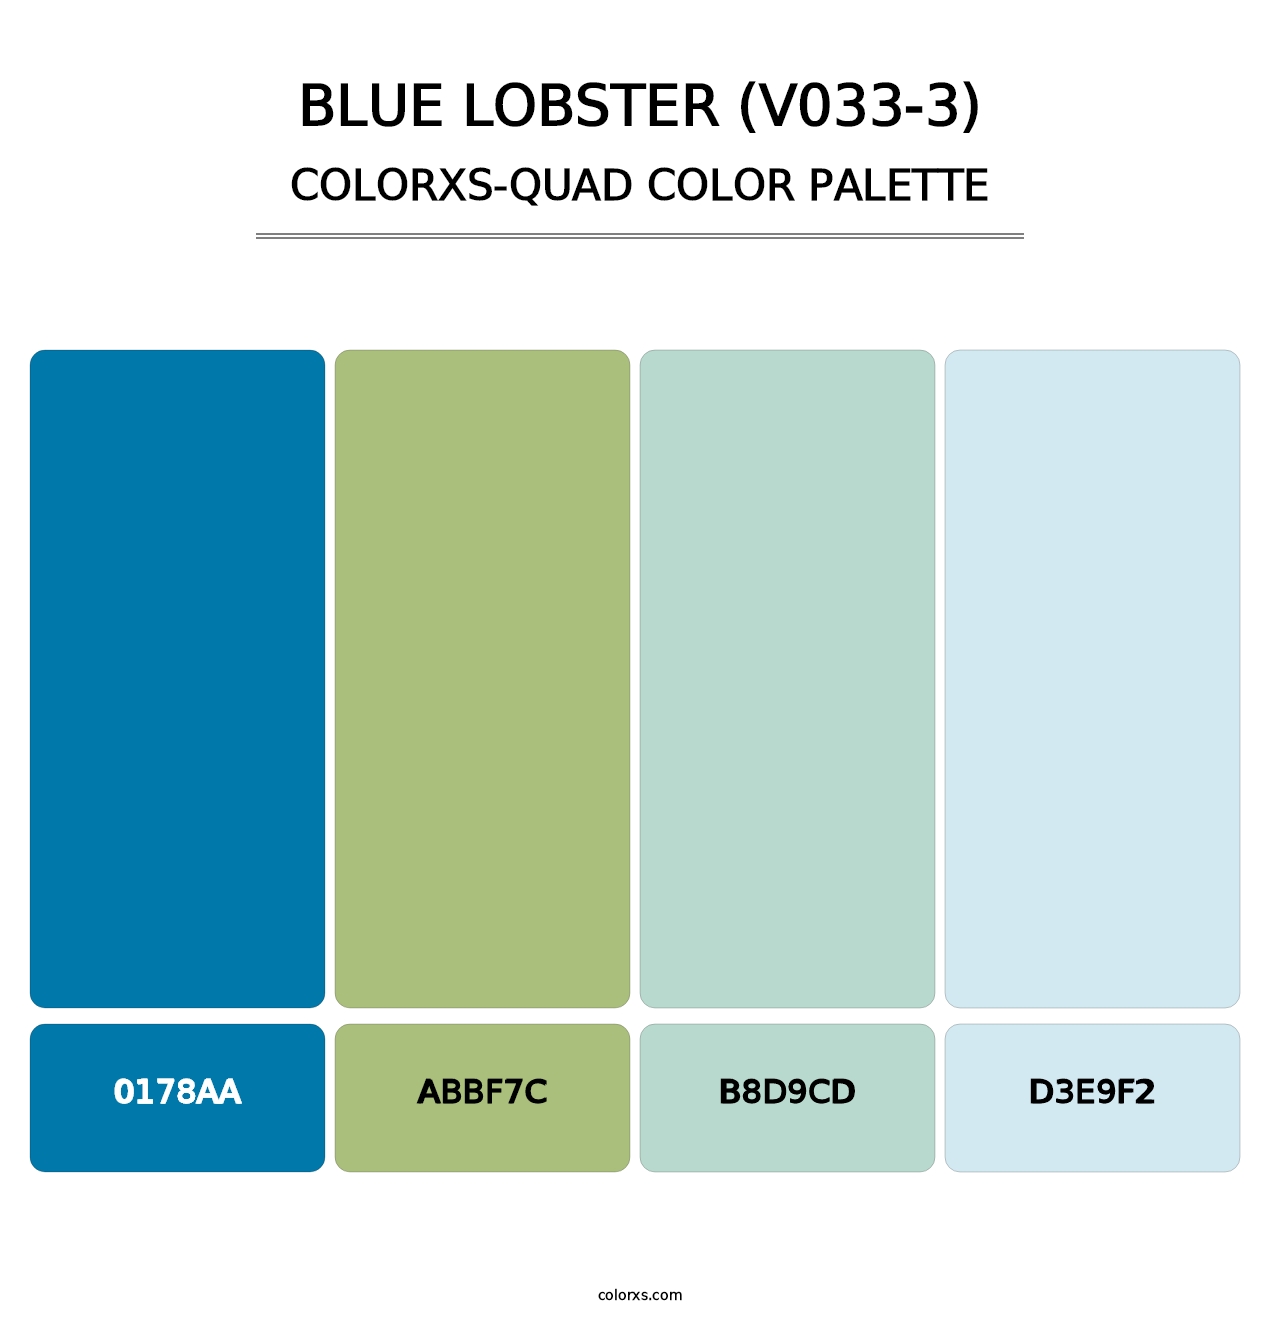 Blue Lobster (V033-3) - Colorxs Quad Palette